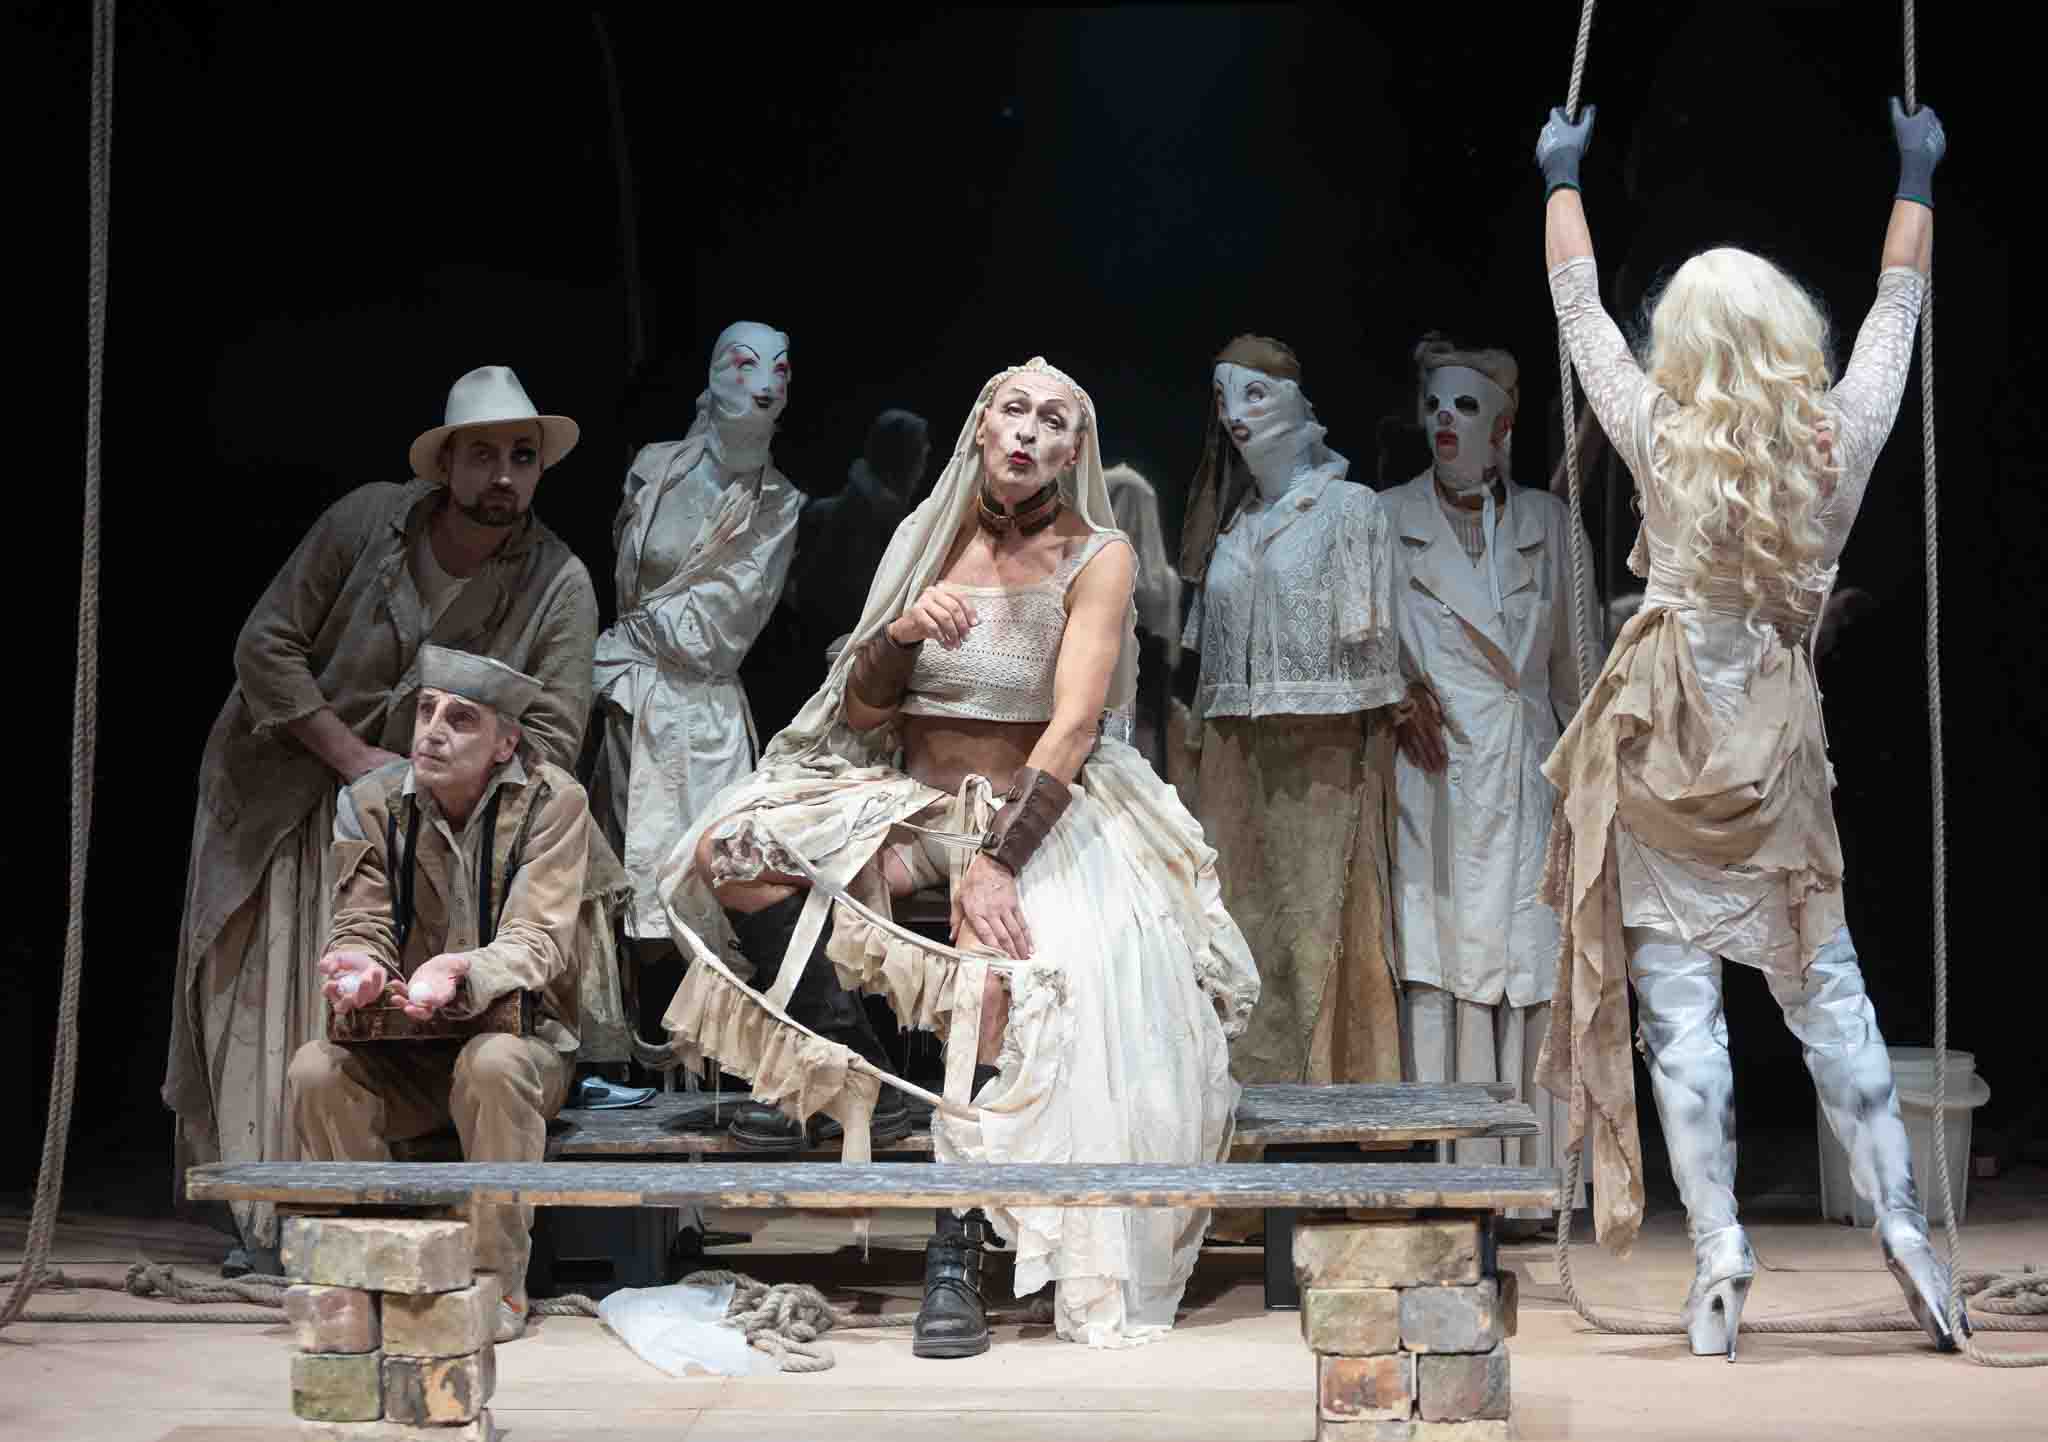 Skats no Viļņas Mazā teātra izrādes “Scilla vēlas būt cilvēks” (rež. G. Tuminaite) // Foto – Greta Skaraitienė